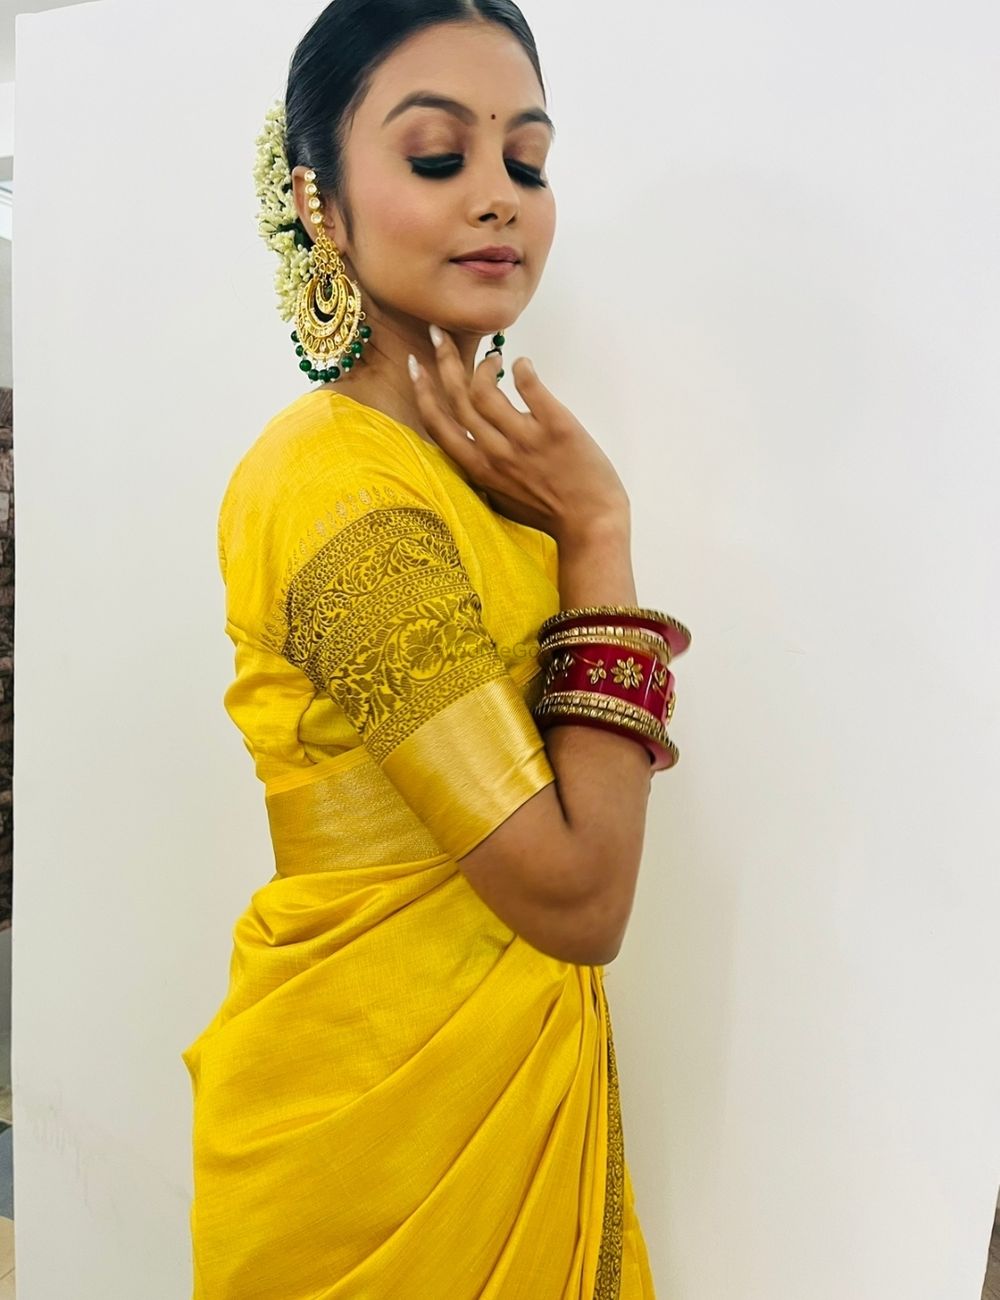 Photo By Madhvi Rao - Bridal Makeup